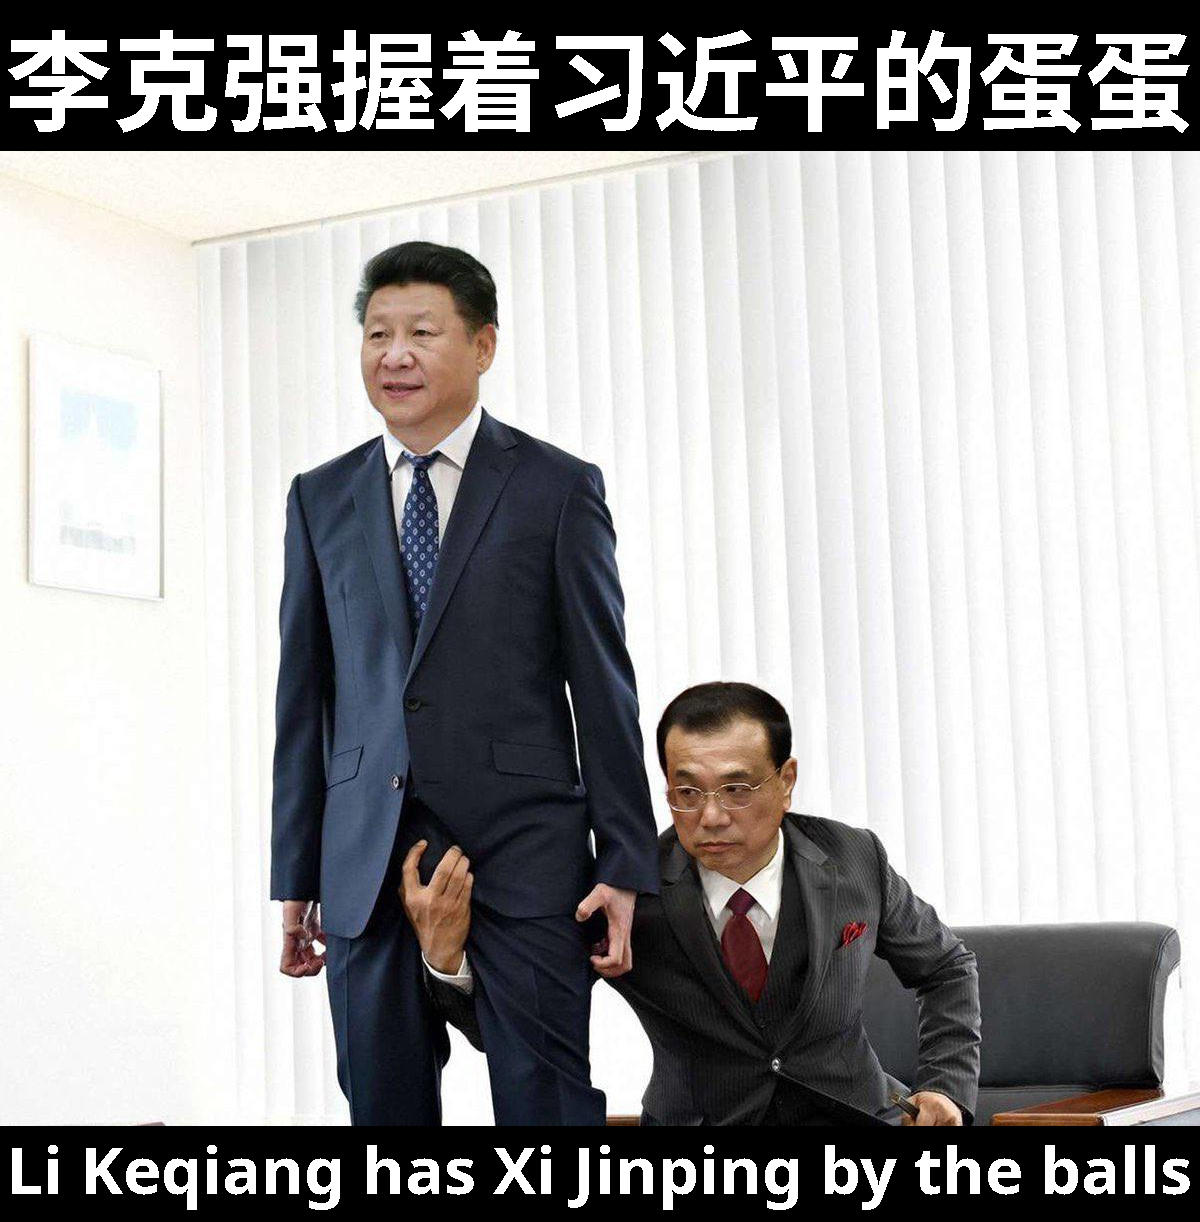 Li Keqiang holding balls of Xi Jinping